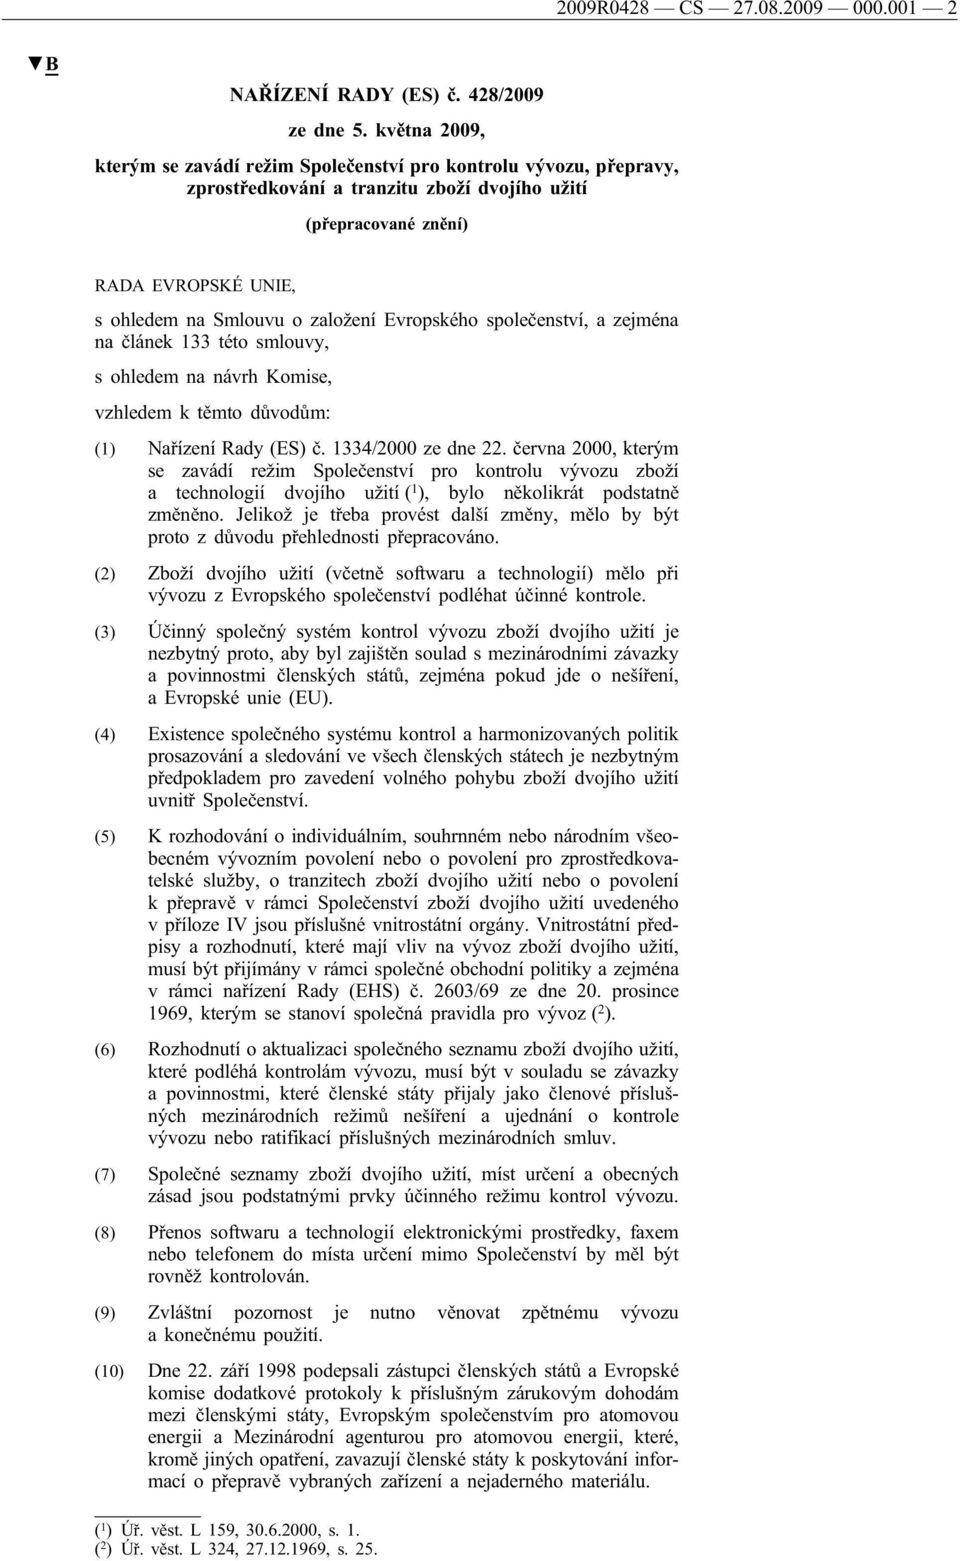 Evropského společenství, a zejména na článek 133 této smlouvy, s ohledem na návrh Komise, vzhledem k těmto důvodům: (1) Nařízení Rady (ES) č. 1334/2000 ze dne 22.